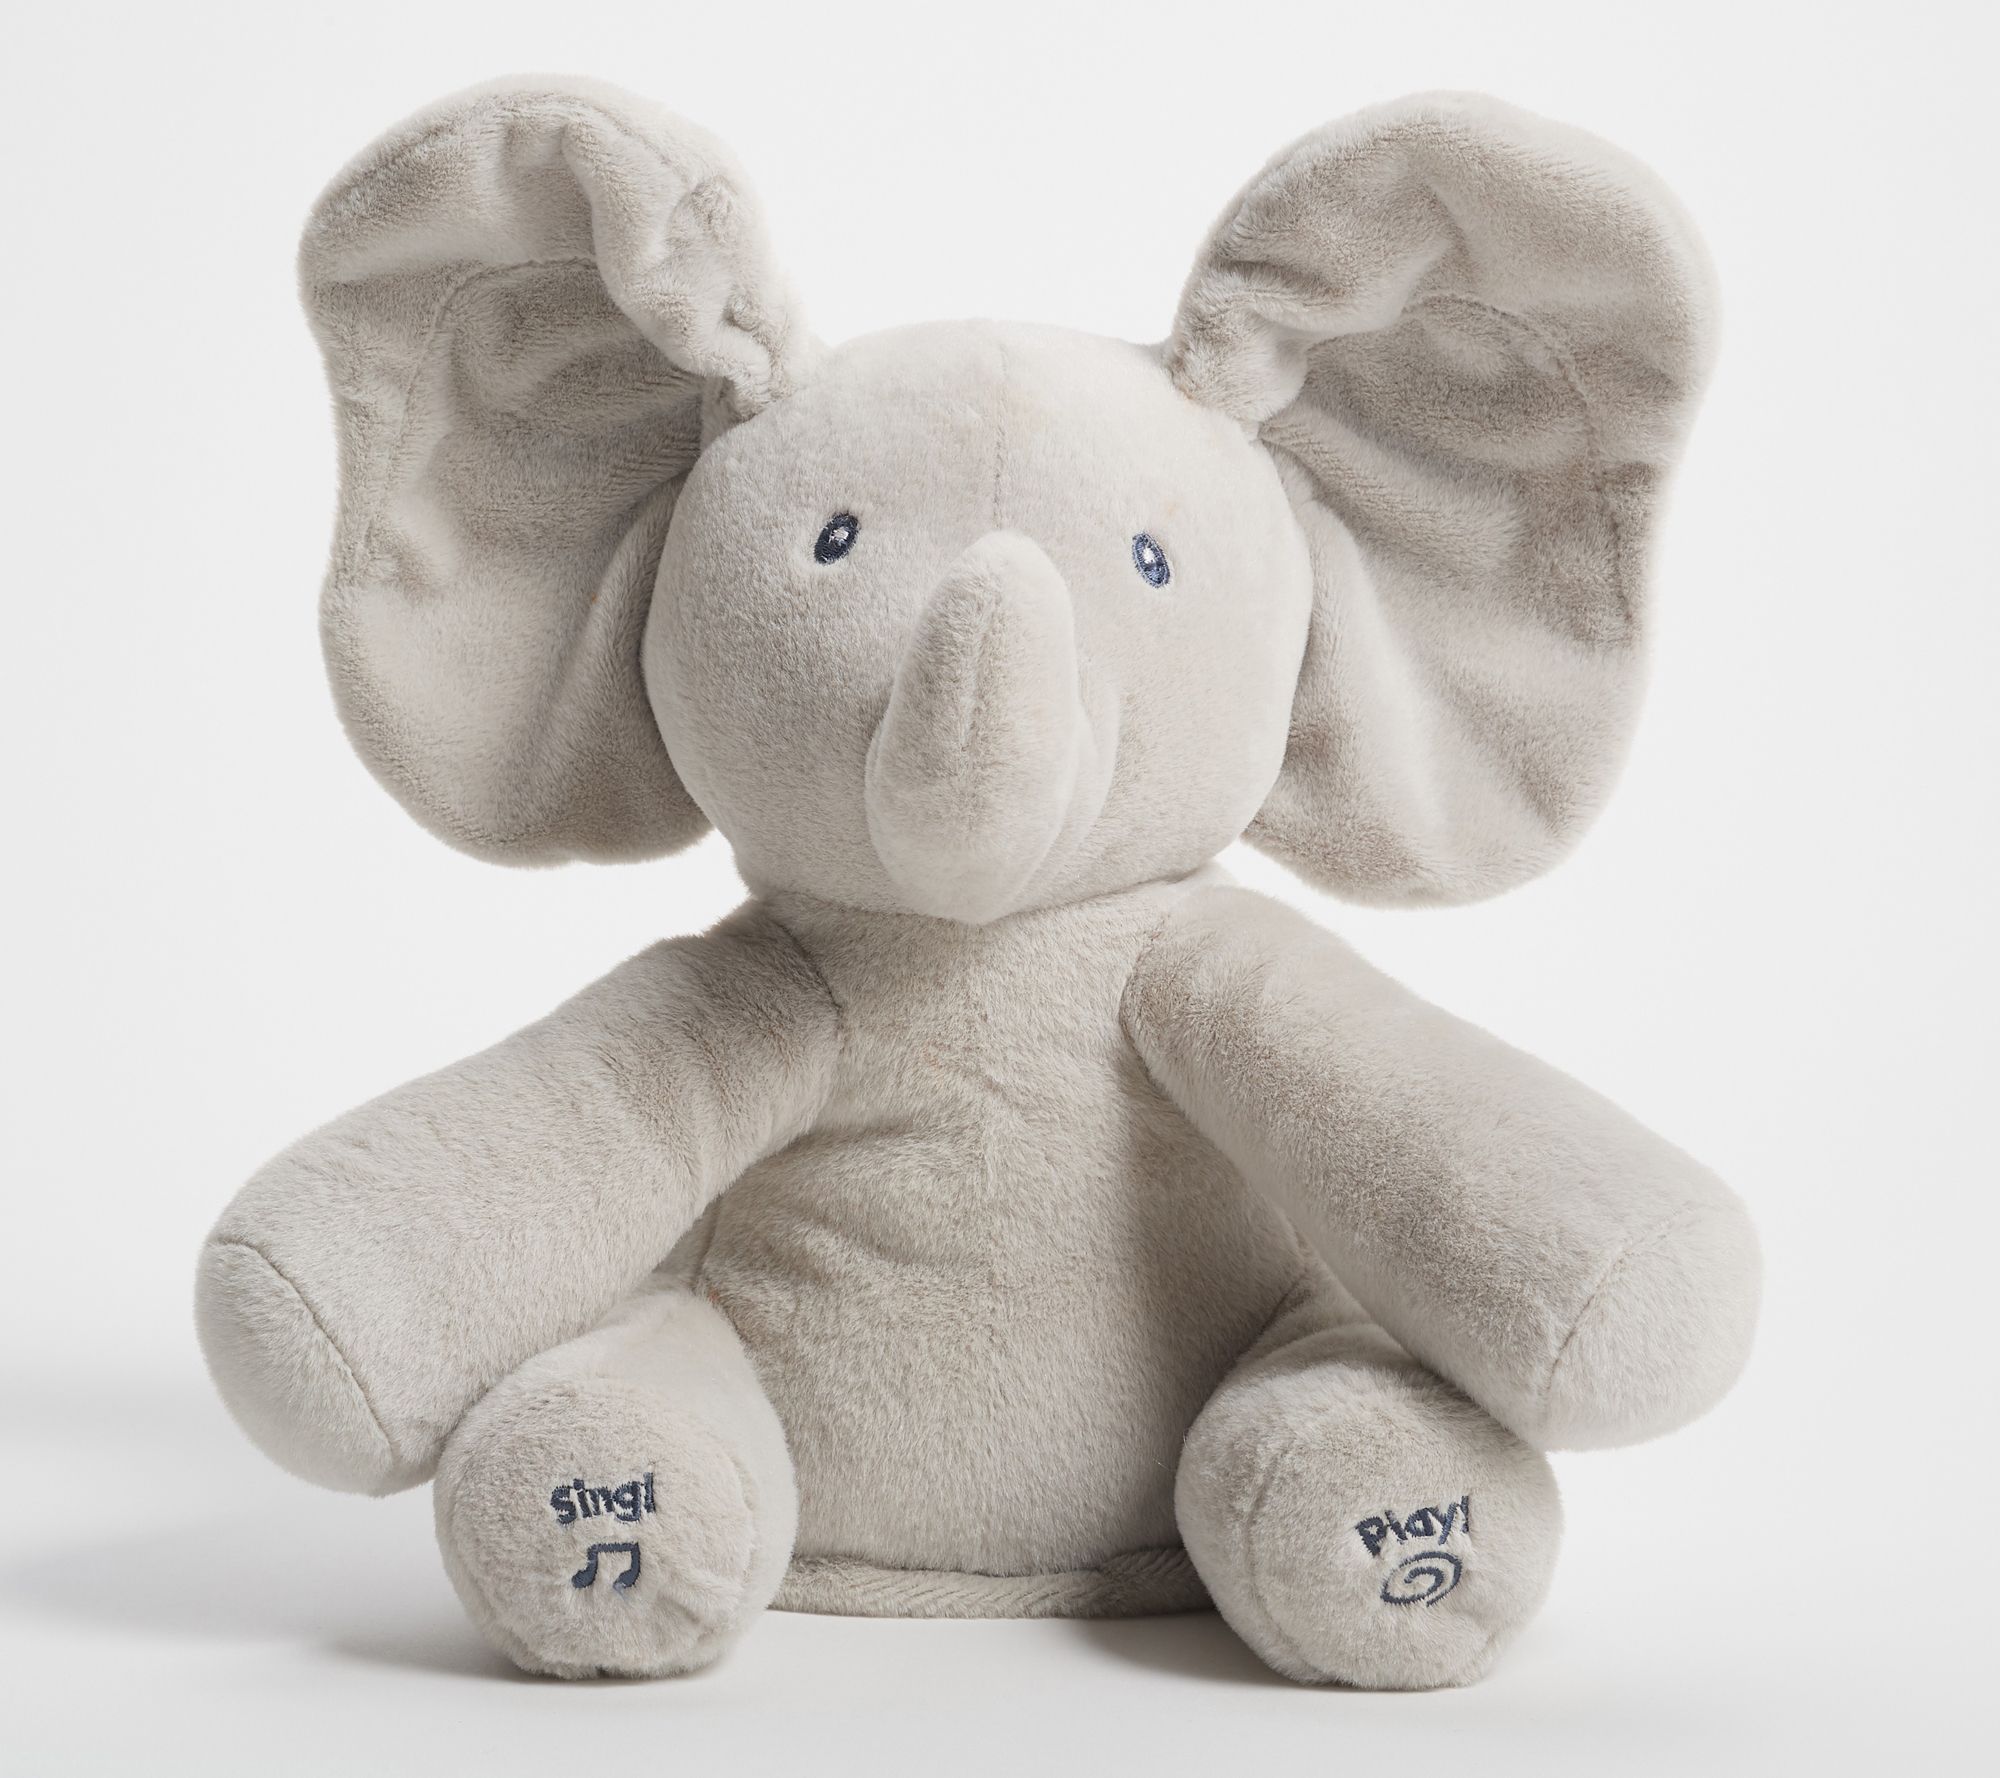 Singing Grey Ernie Elephant Plush Soft Toy animated moving ears baby toddler 